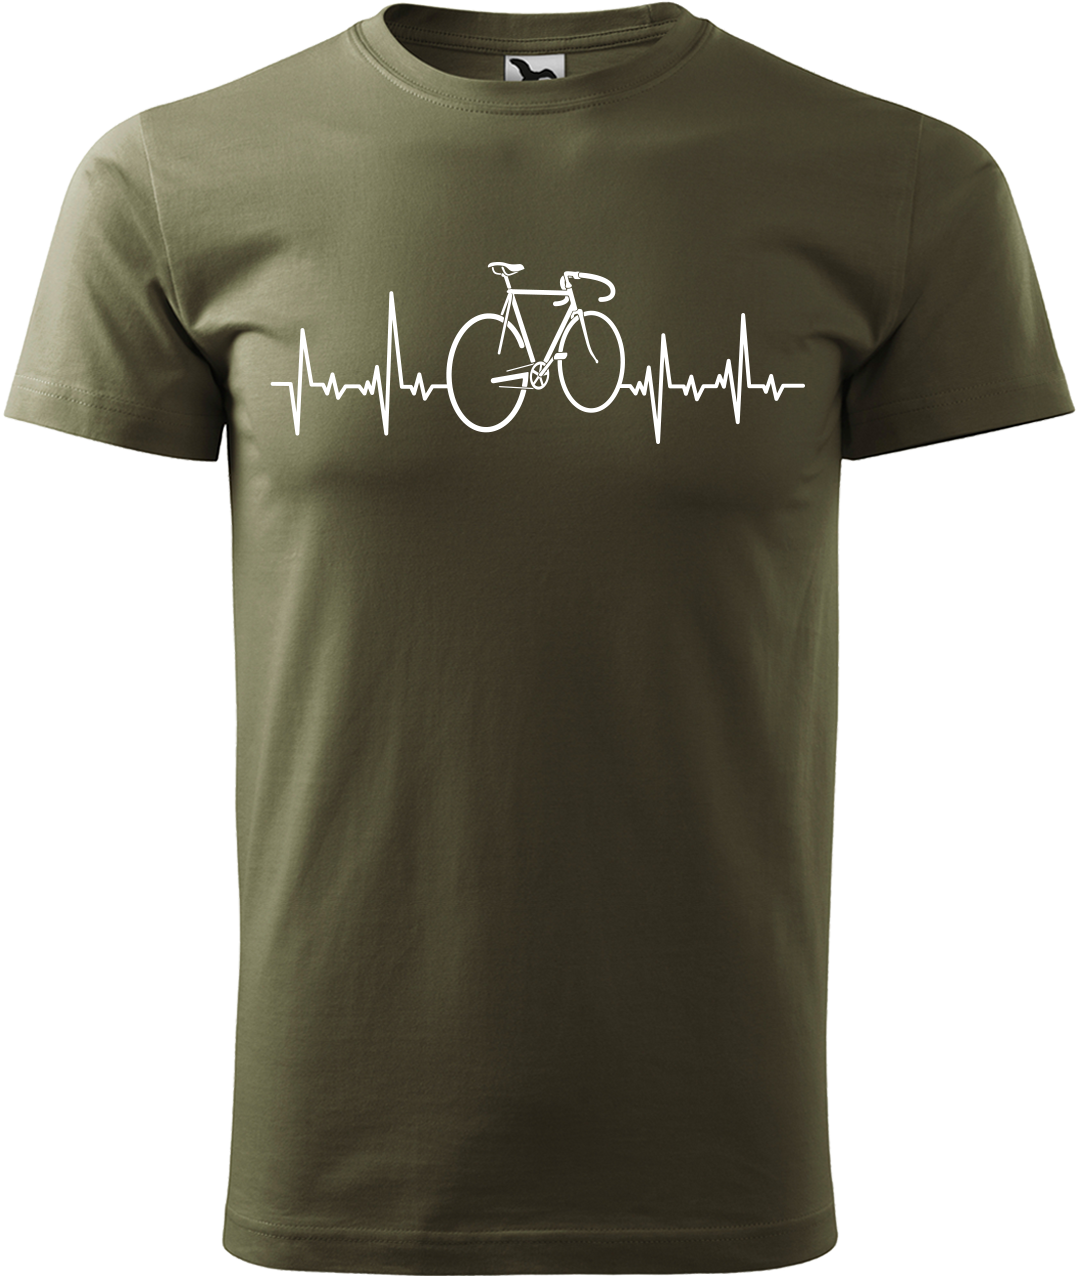 Pánské tričko s kolem - Cyklistův kardiogram Velikost: XL, Barva: Military (69)